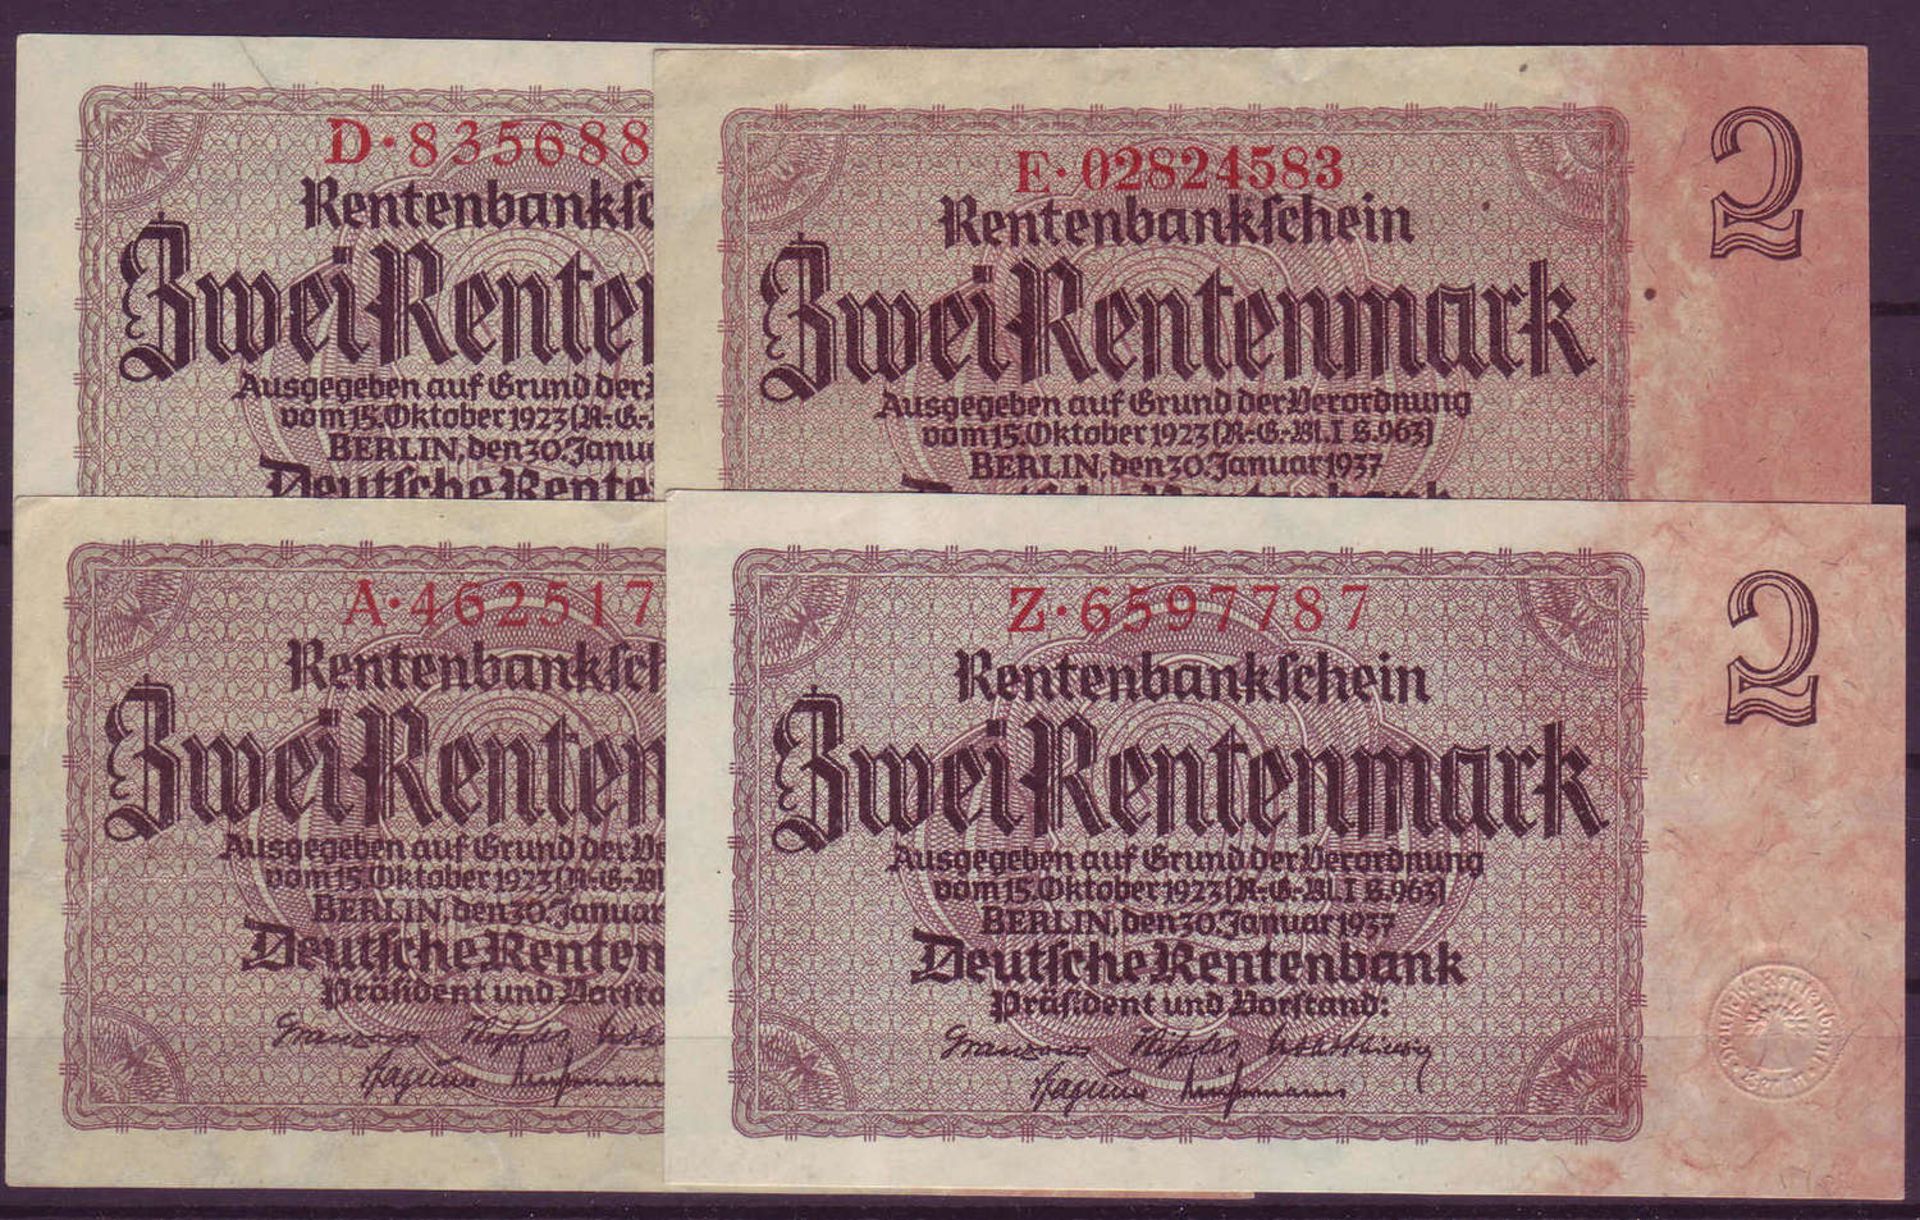 Drittes Reich, Deutsche Rentenbank 1934 - 37. Kleines Lot con 2.- Rentenmark - Scheinen (4 Stück).